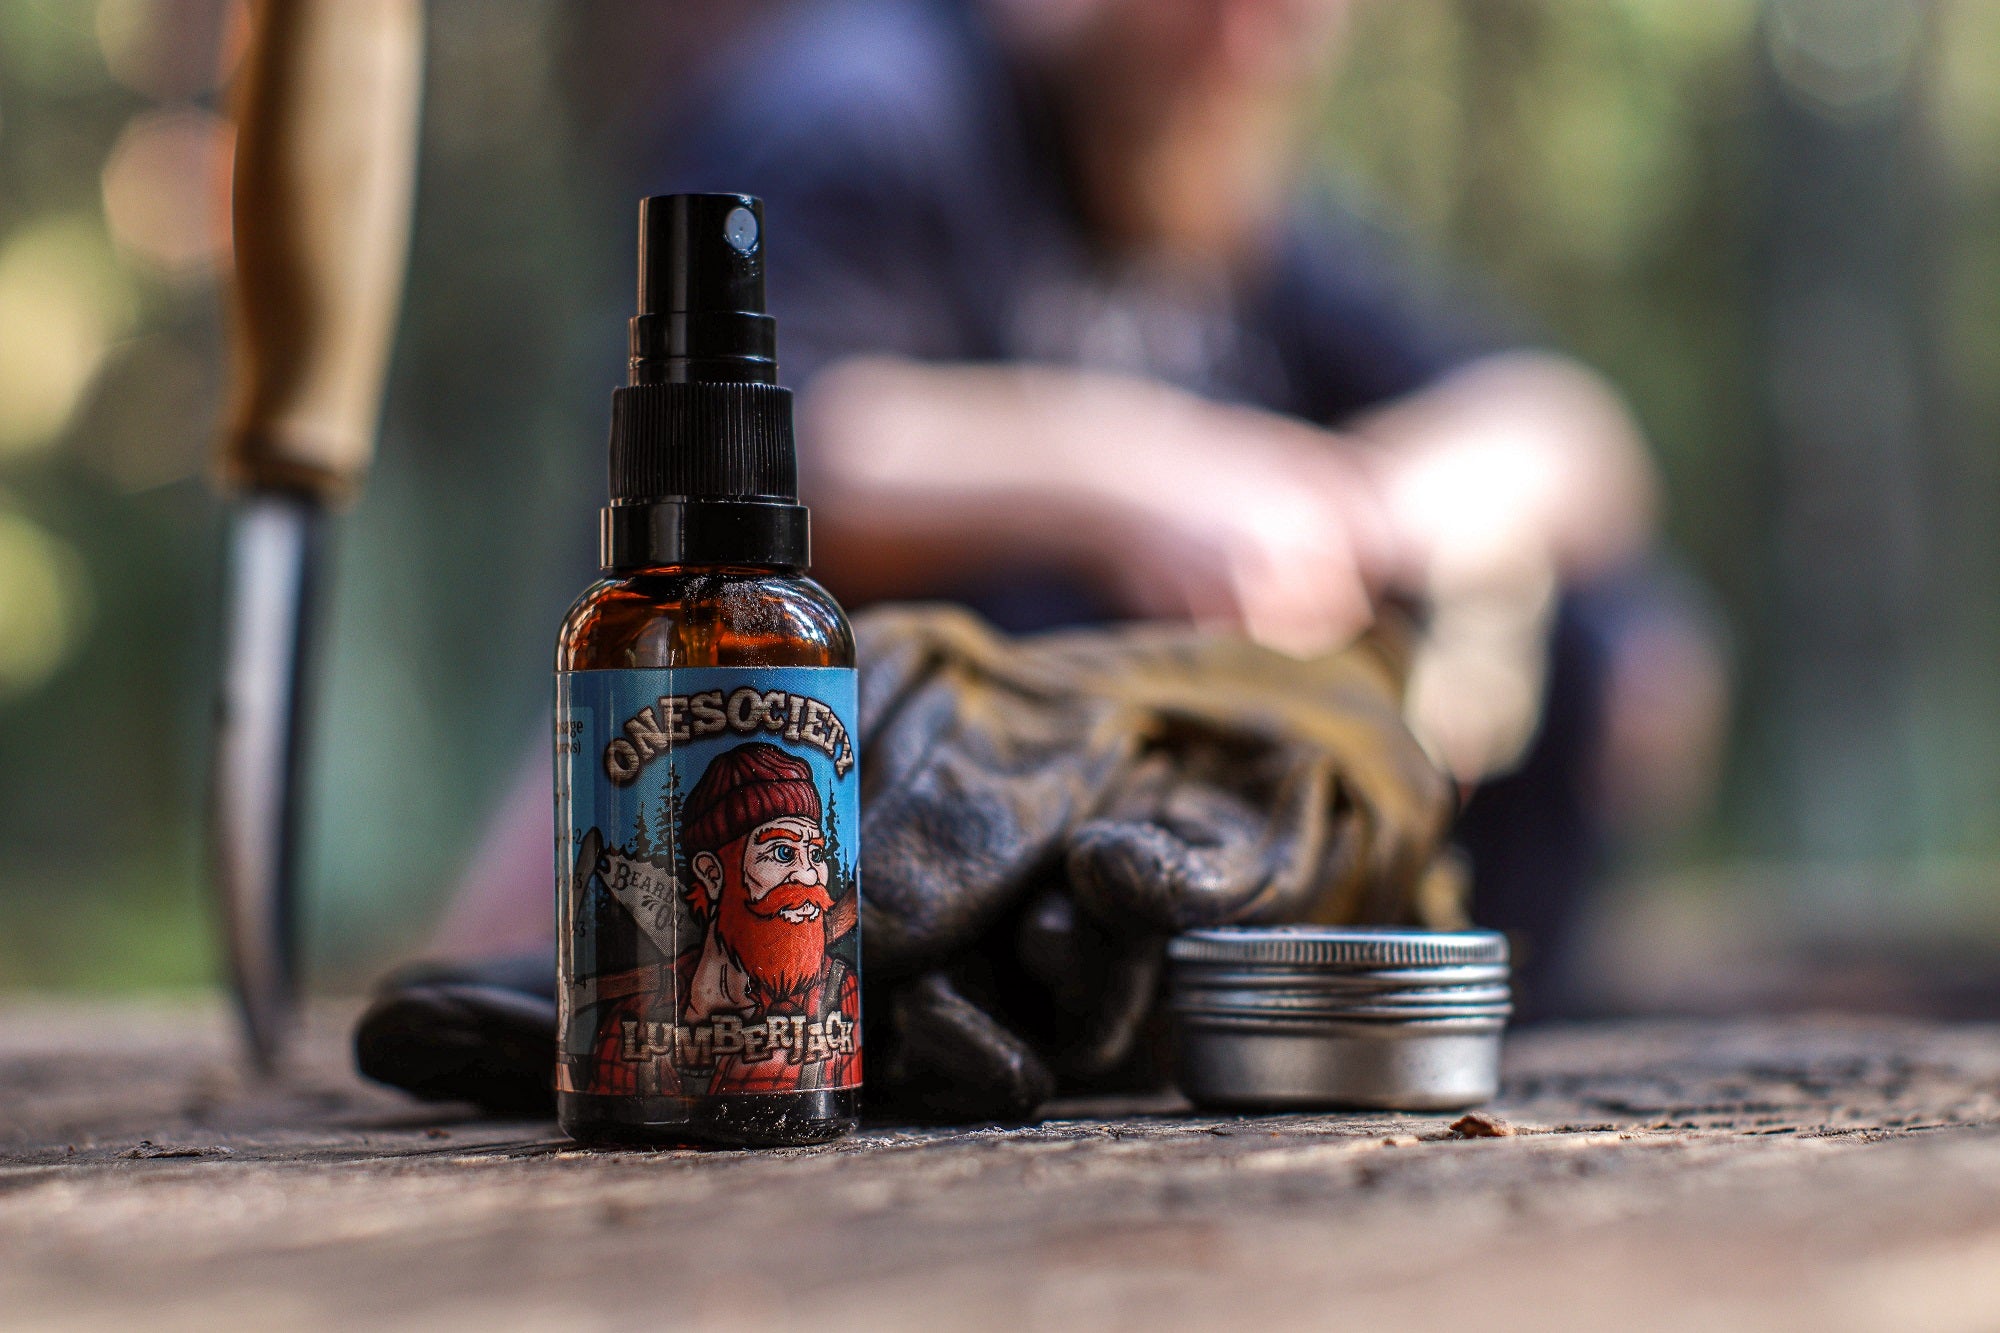 One society lumberjack beard oil made for men. 20% off savings on pine smelling beard oil.